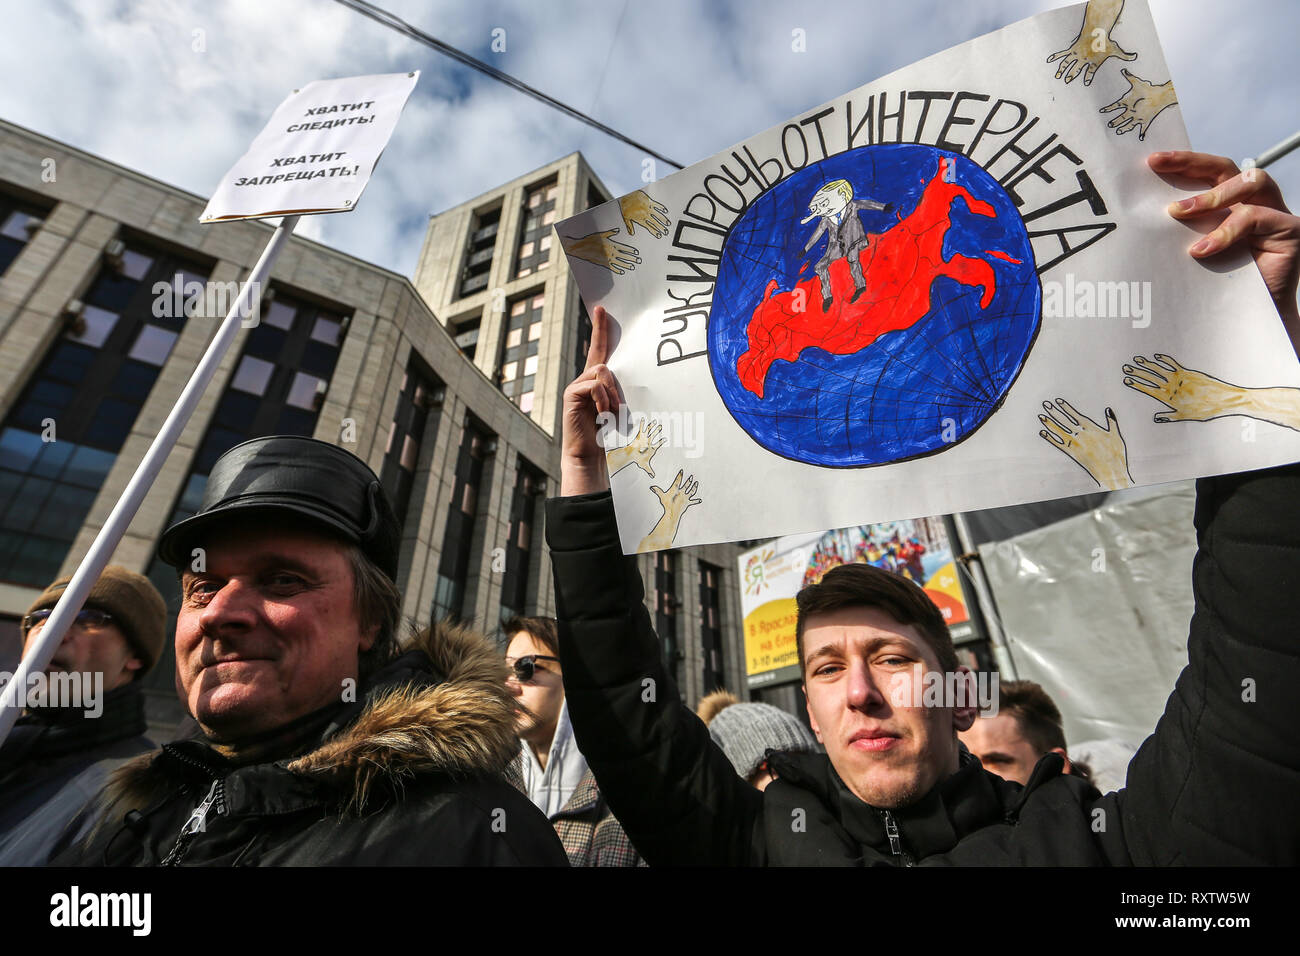 Les protestataires sont vu la tenue des pancartes lors de la manifestation. Les participants à un rassemblement de l'opposition dans le centre de Moscou et de protester contre le contrôle de l'état sur l'internet en Russie. Banque D'Images